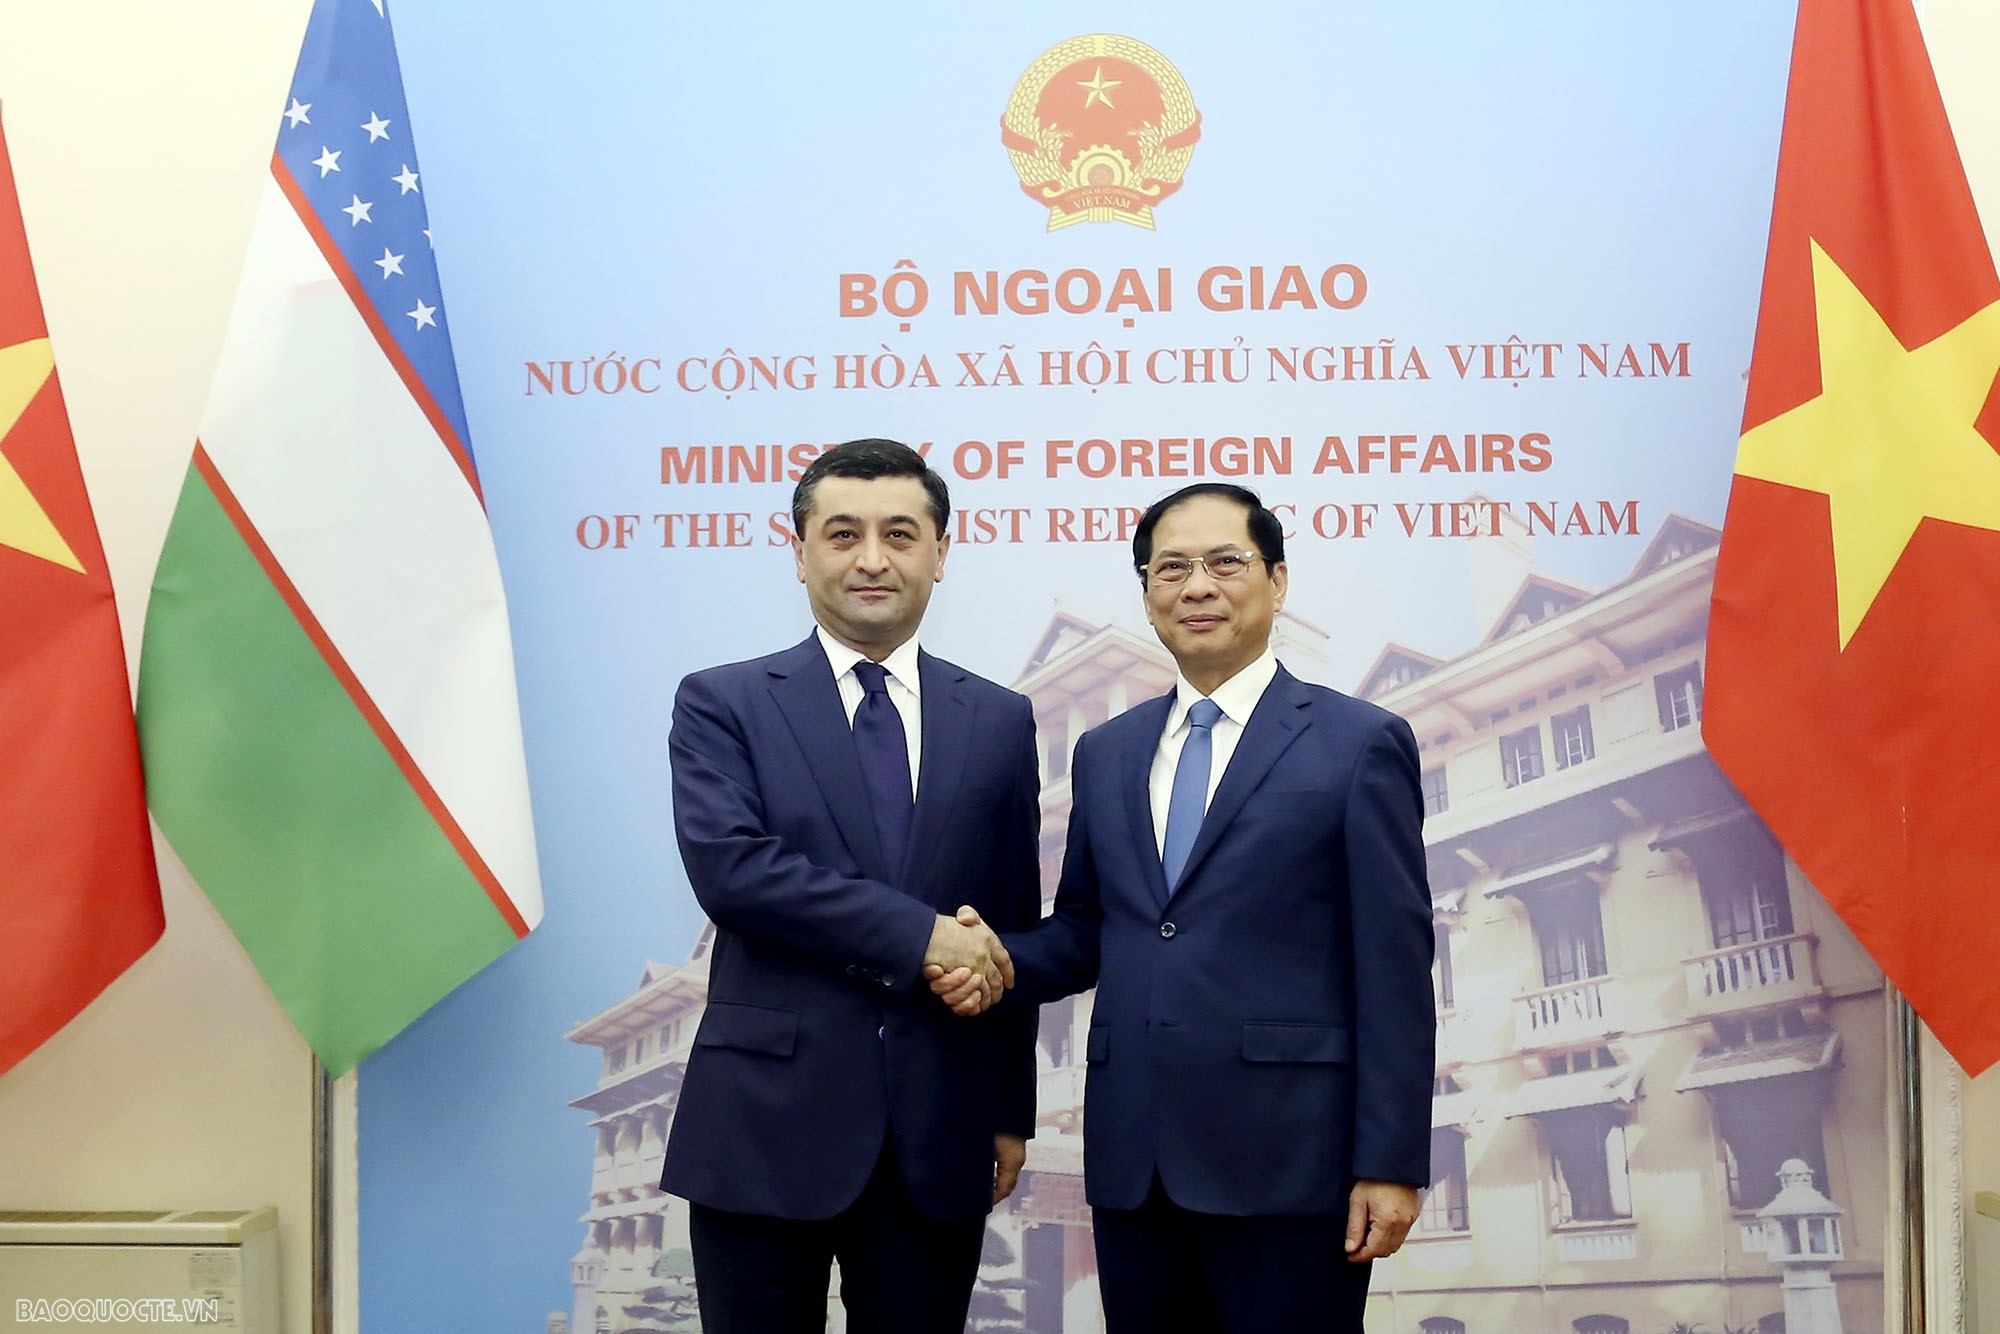 Ngày 18/3, tại Hà Nội, Bộ trưởng Ngoại giao Bùi Thanh Sơn đã tiếp, hội đàm với Bộ trưởng Ngoại giao Uzbekistan Bakhtiyor Saidov